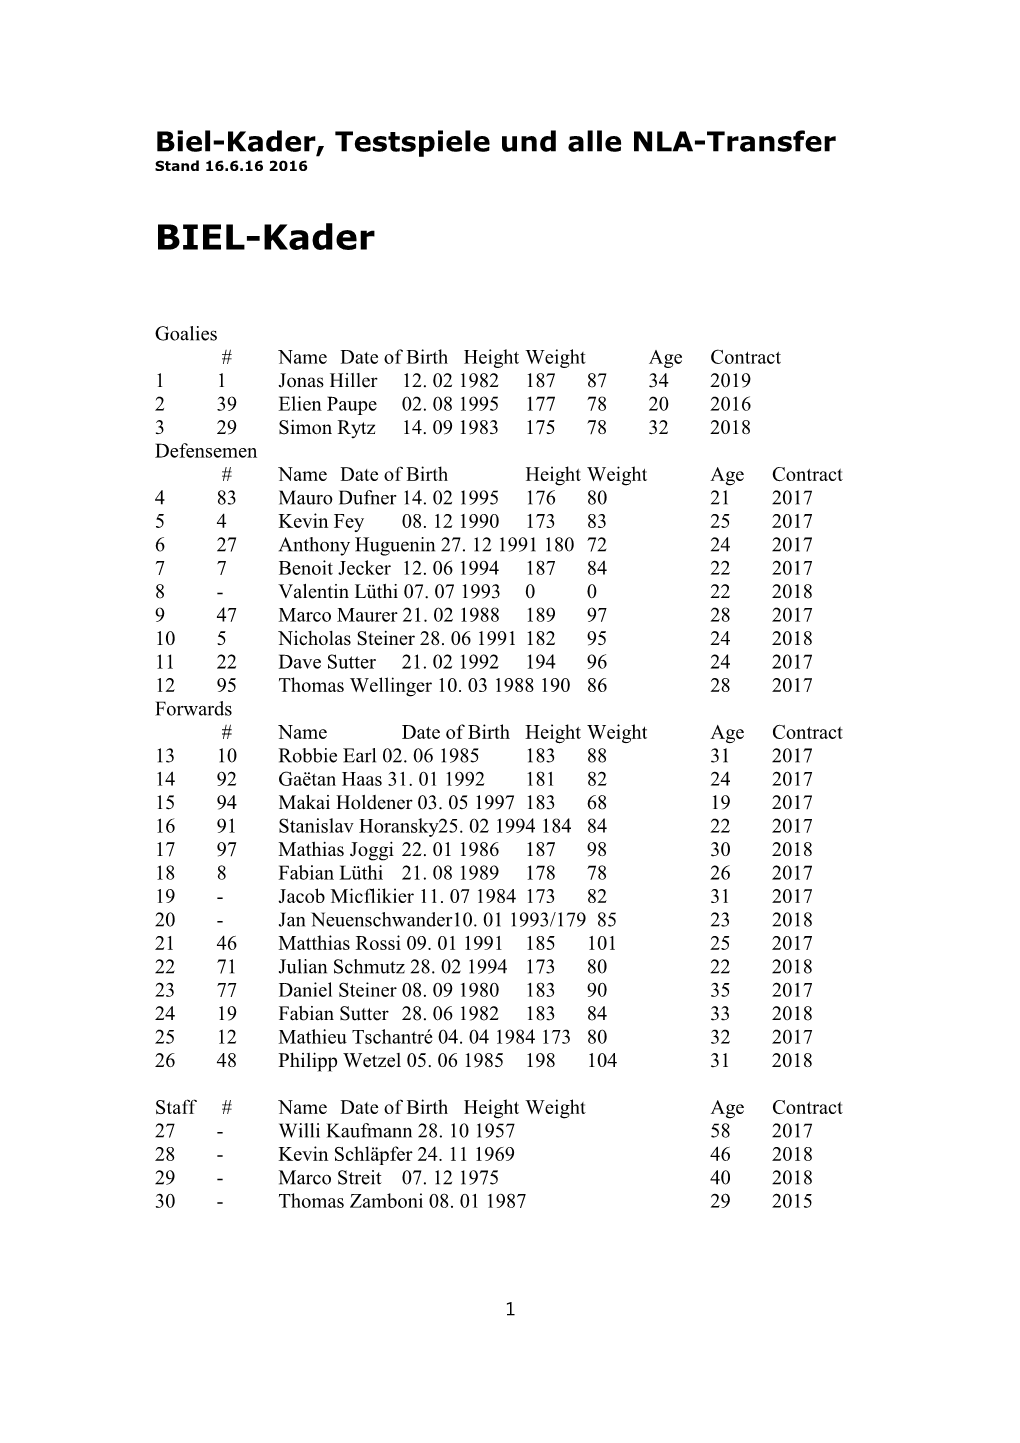 Biel-Kader, Testspiele Und Alle NLA-Transfer Stand 16.6.16 2016